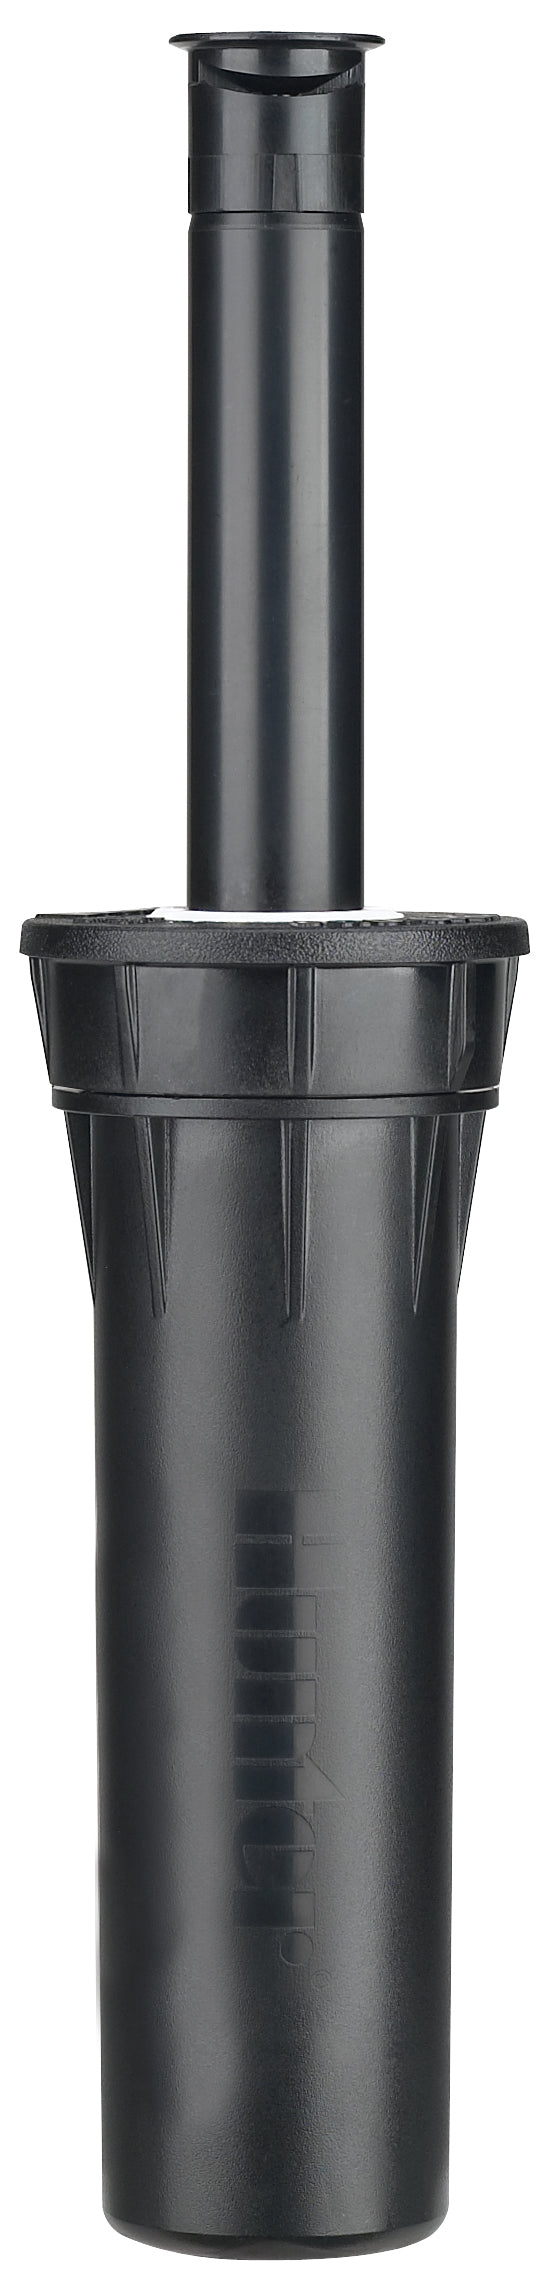 Hunter Pro Spray Nozzle 2.6m 25-360 Degrees Stream Nozzle